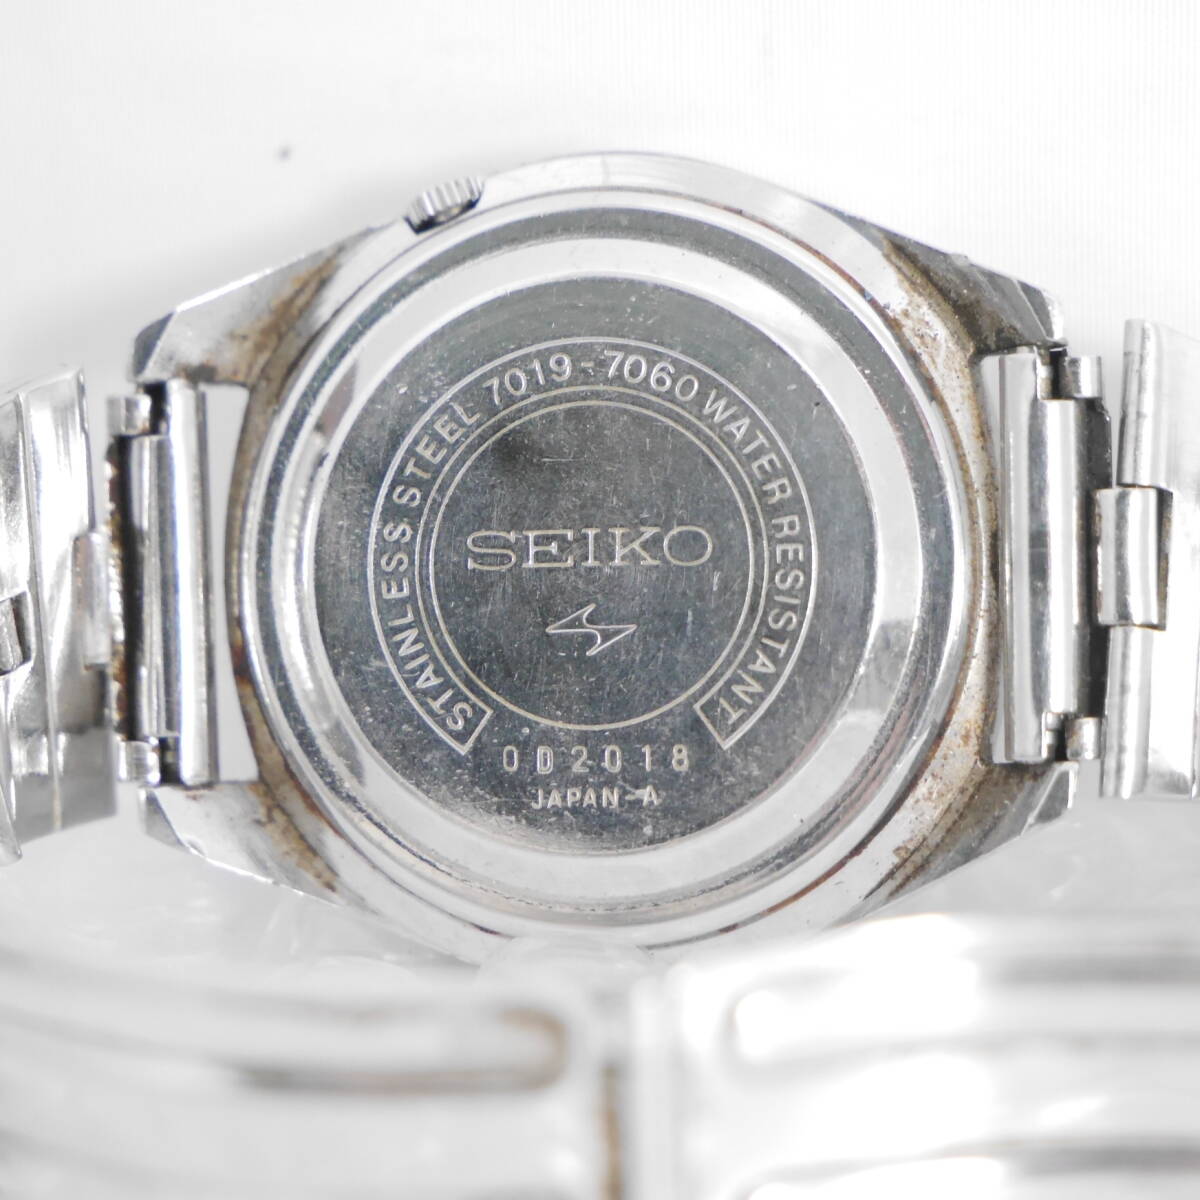 ジャンク 腕時計 SEIKO 7019-7060 セイコー O179 動作未確認 詳細不明_画像2